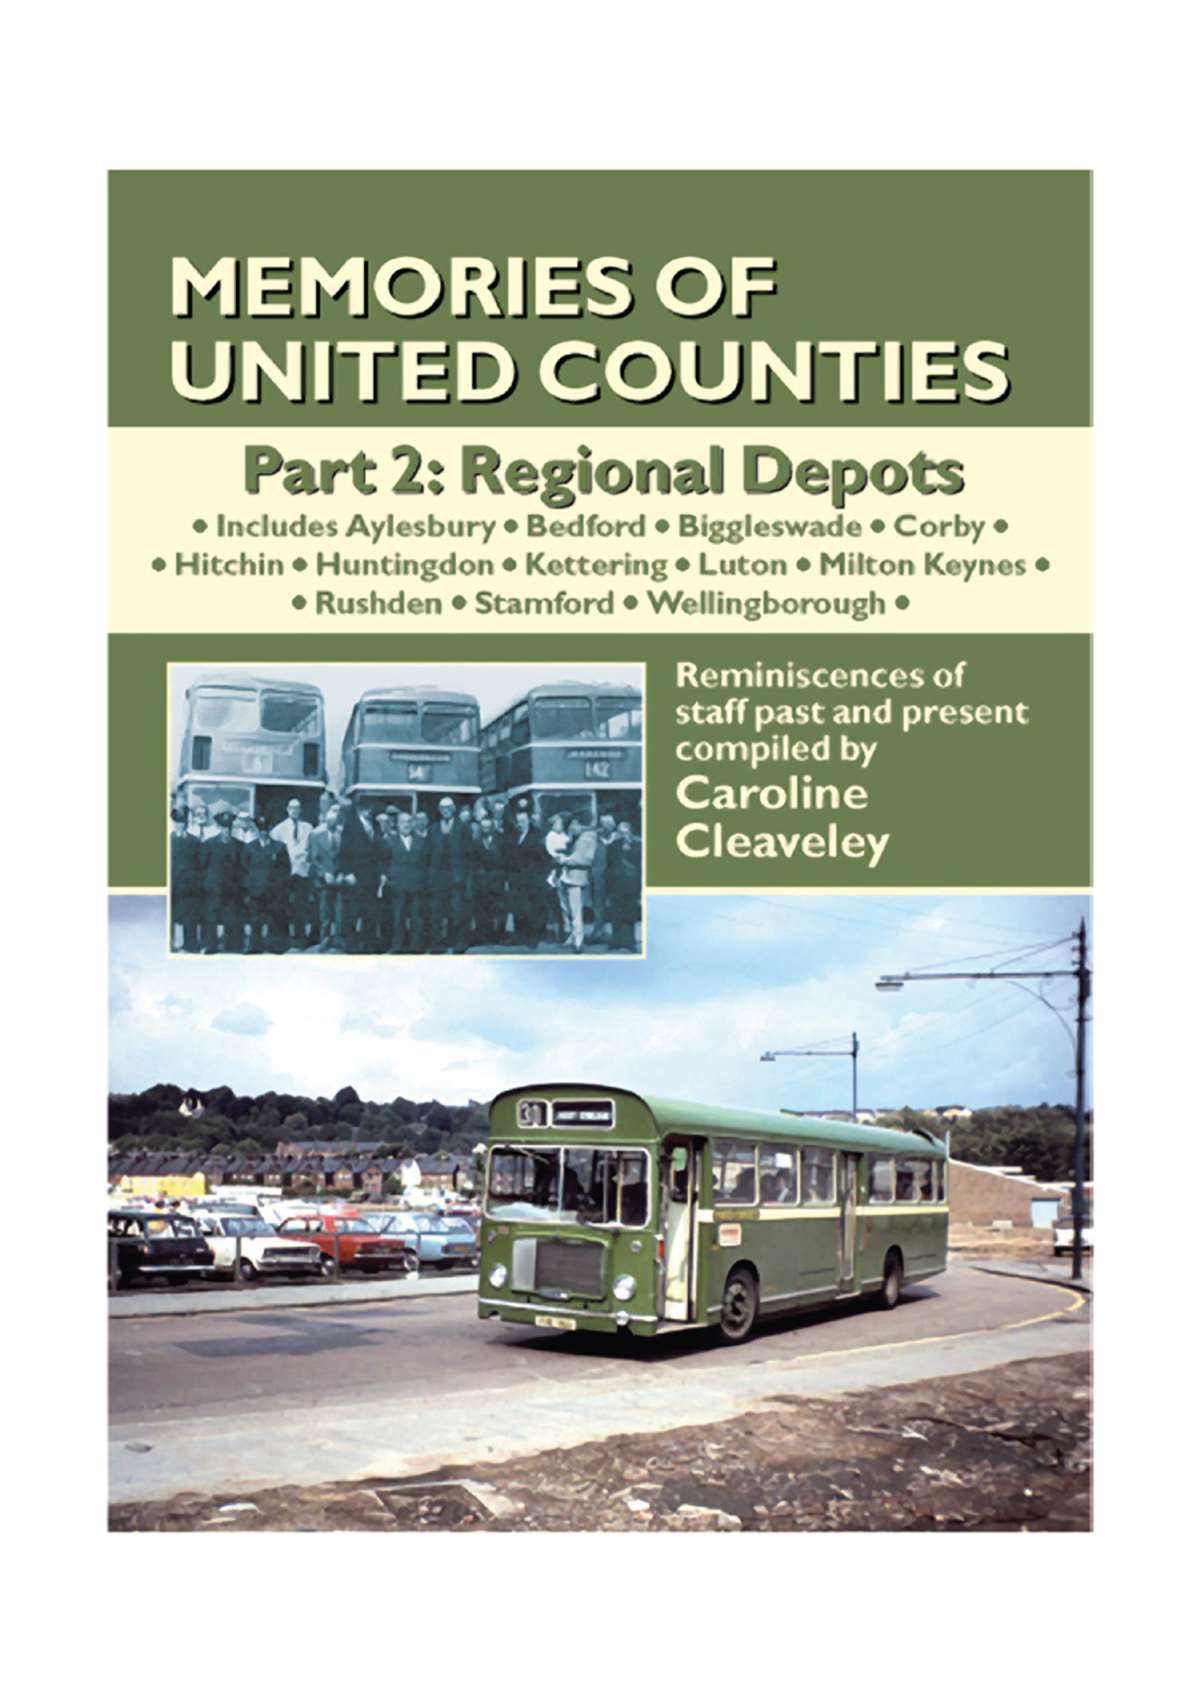 3443 - Memories of United Counties Volume 2